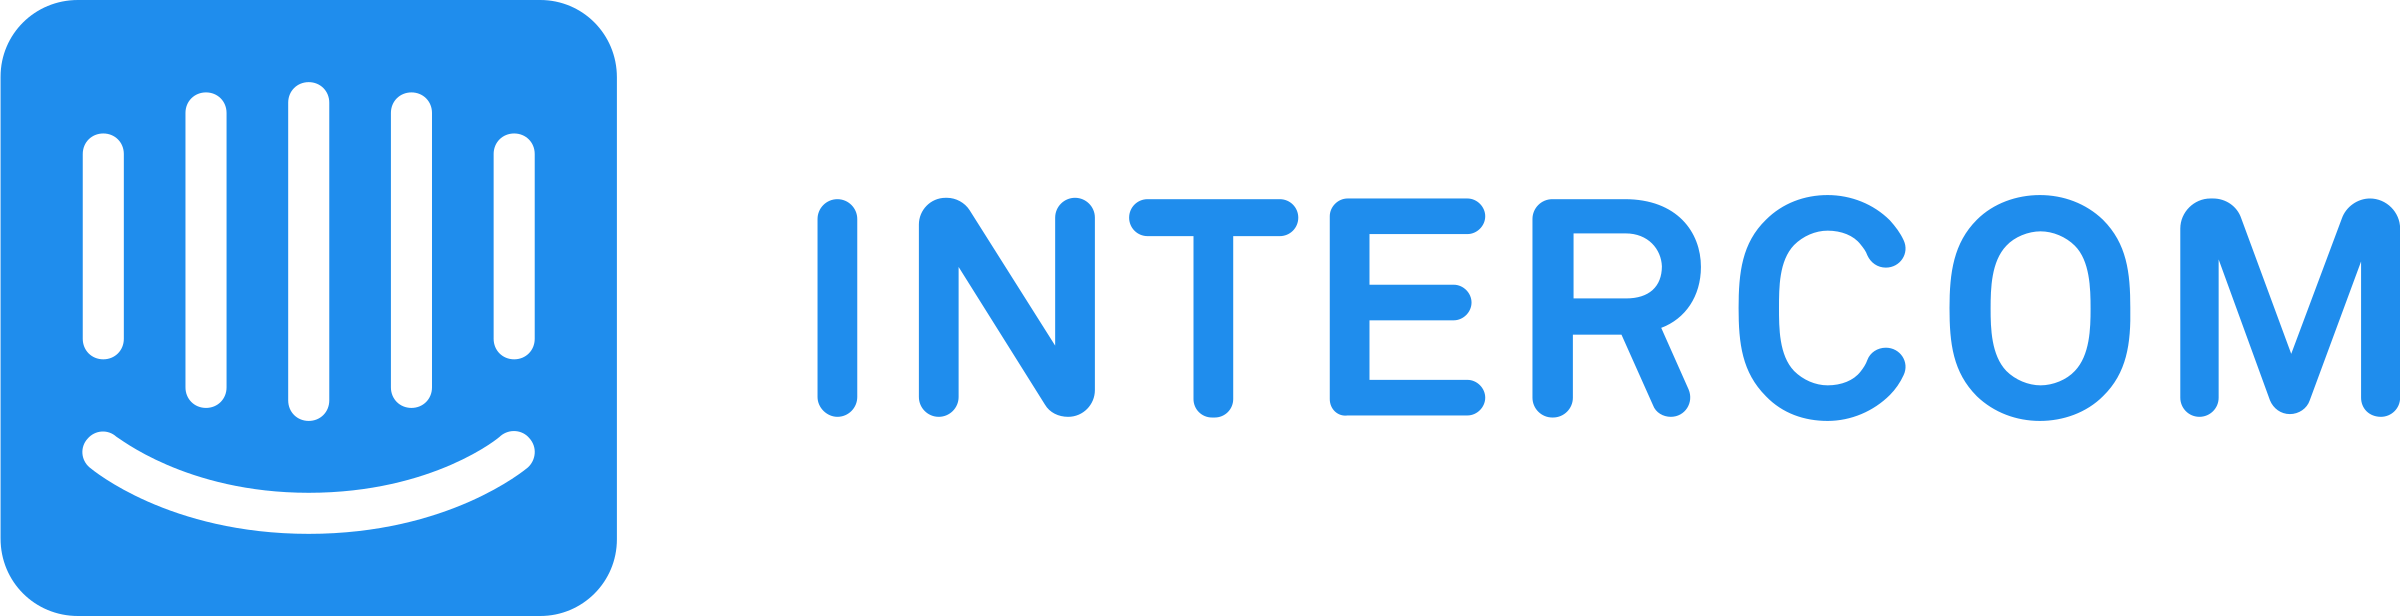 intercom 1 logo png transparent